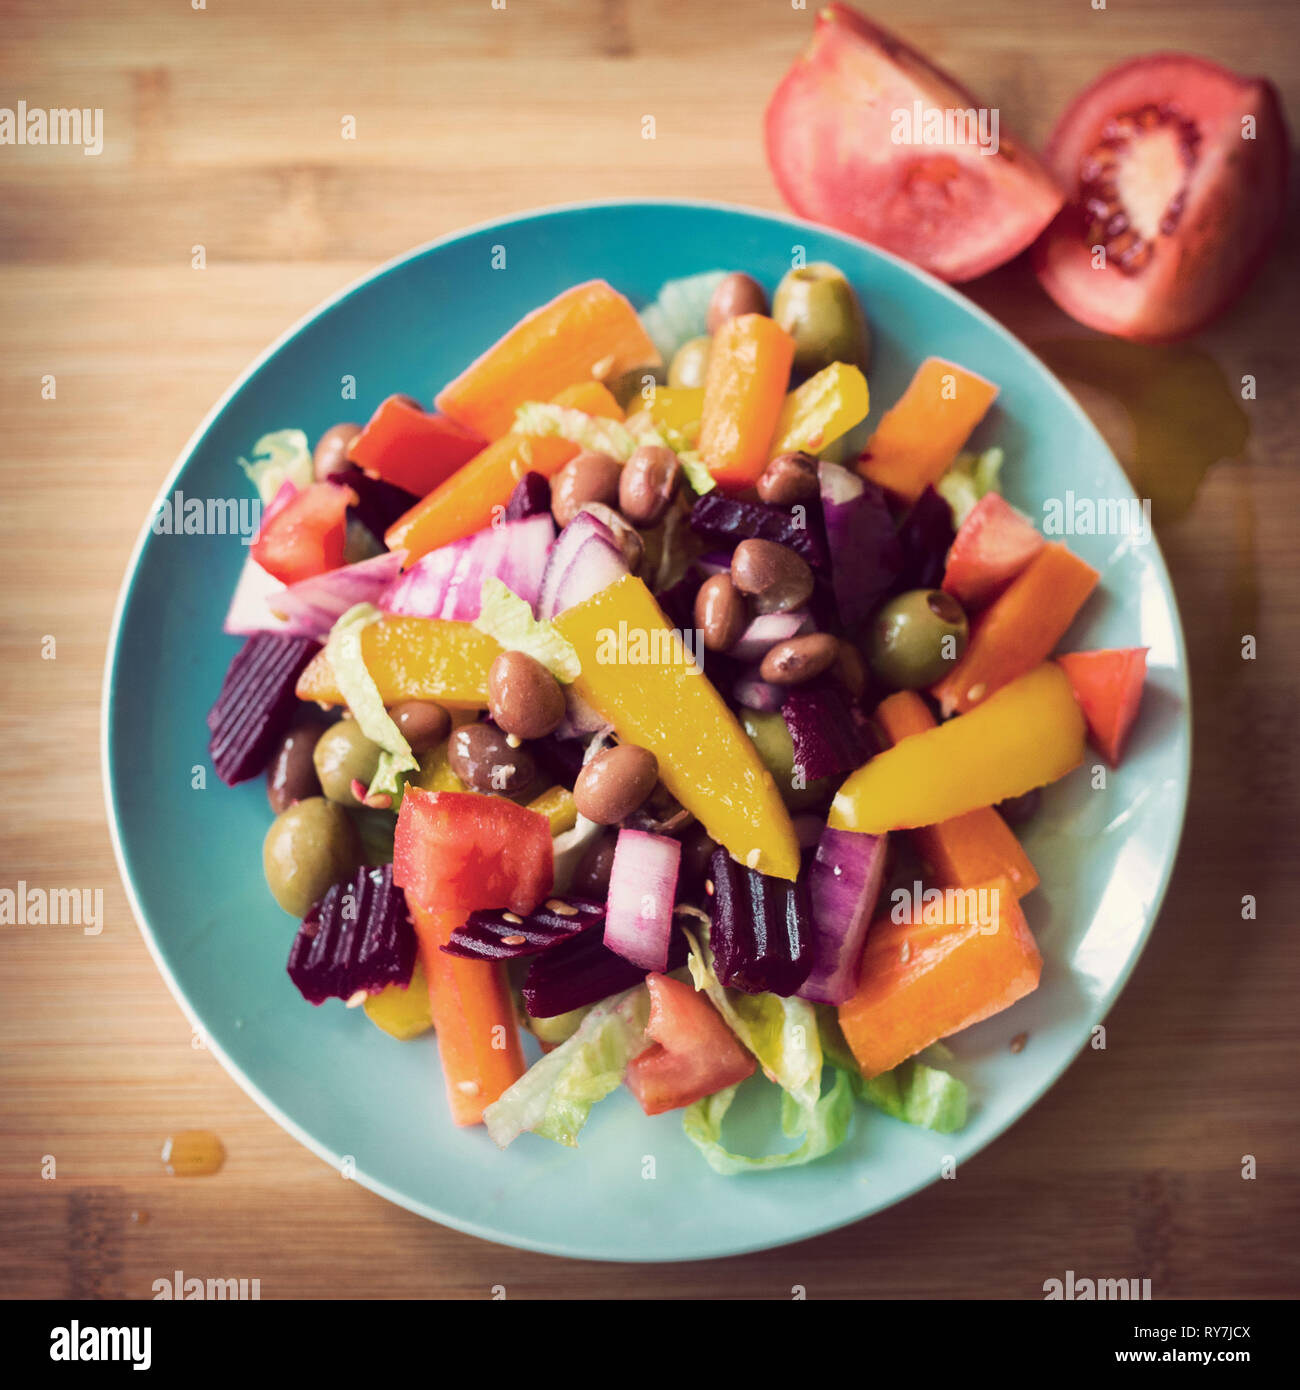 Bunte vegane kleine Platte Salat mit Retro-vsco-Filter auf einem Holzbrett. Veganuary Stockfoto